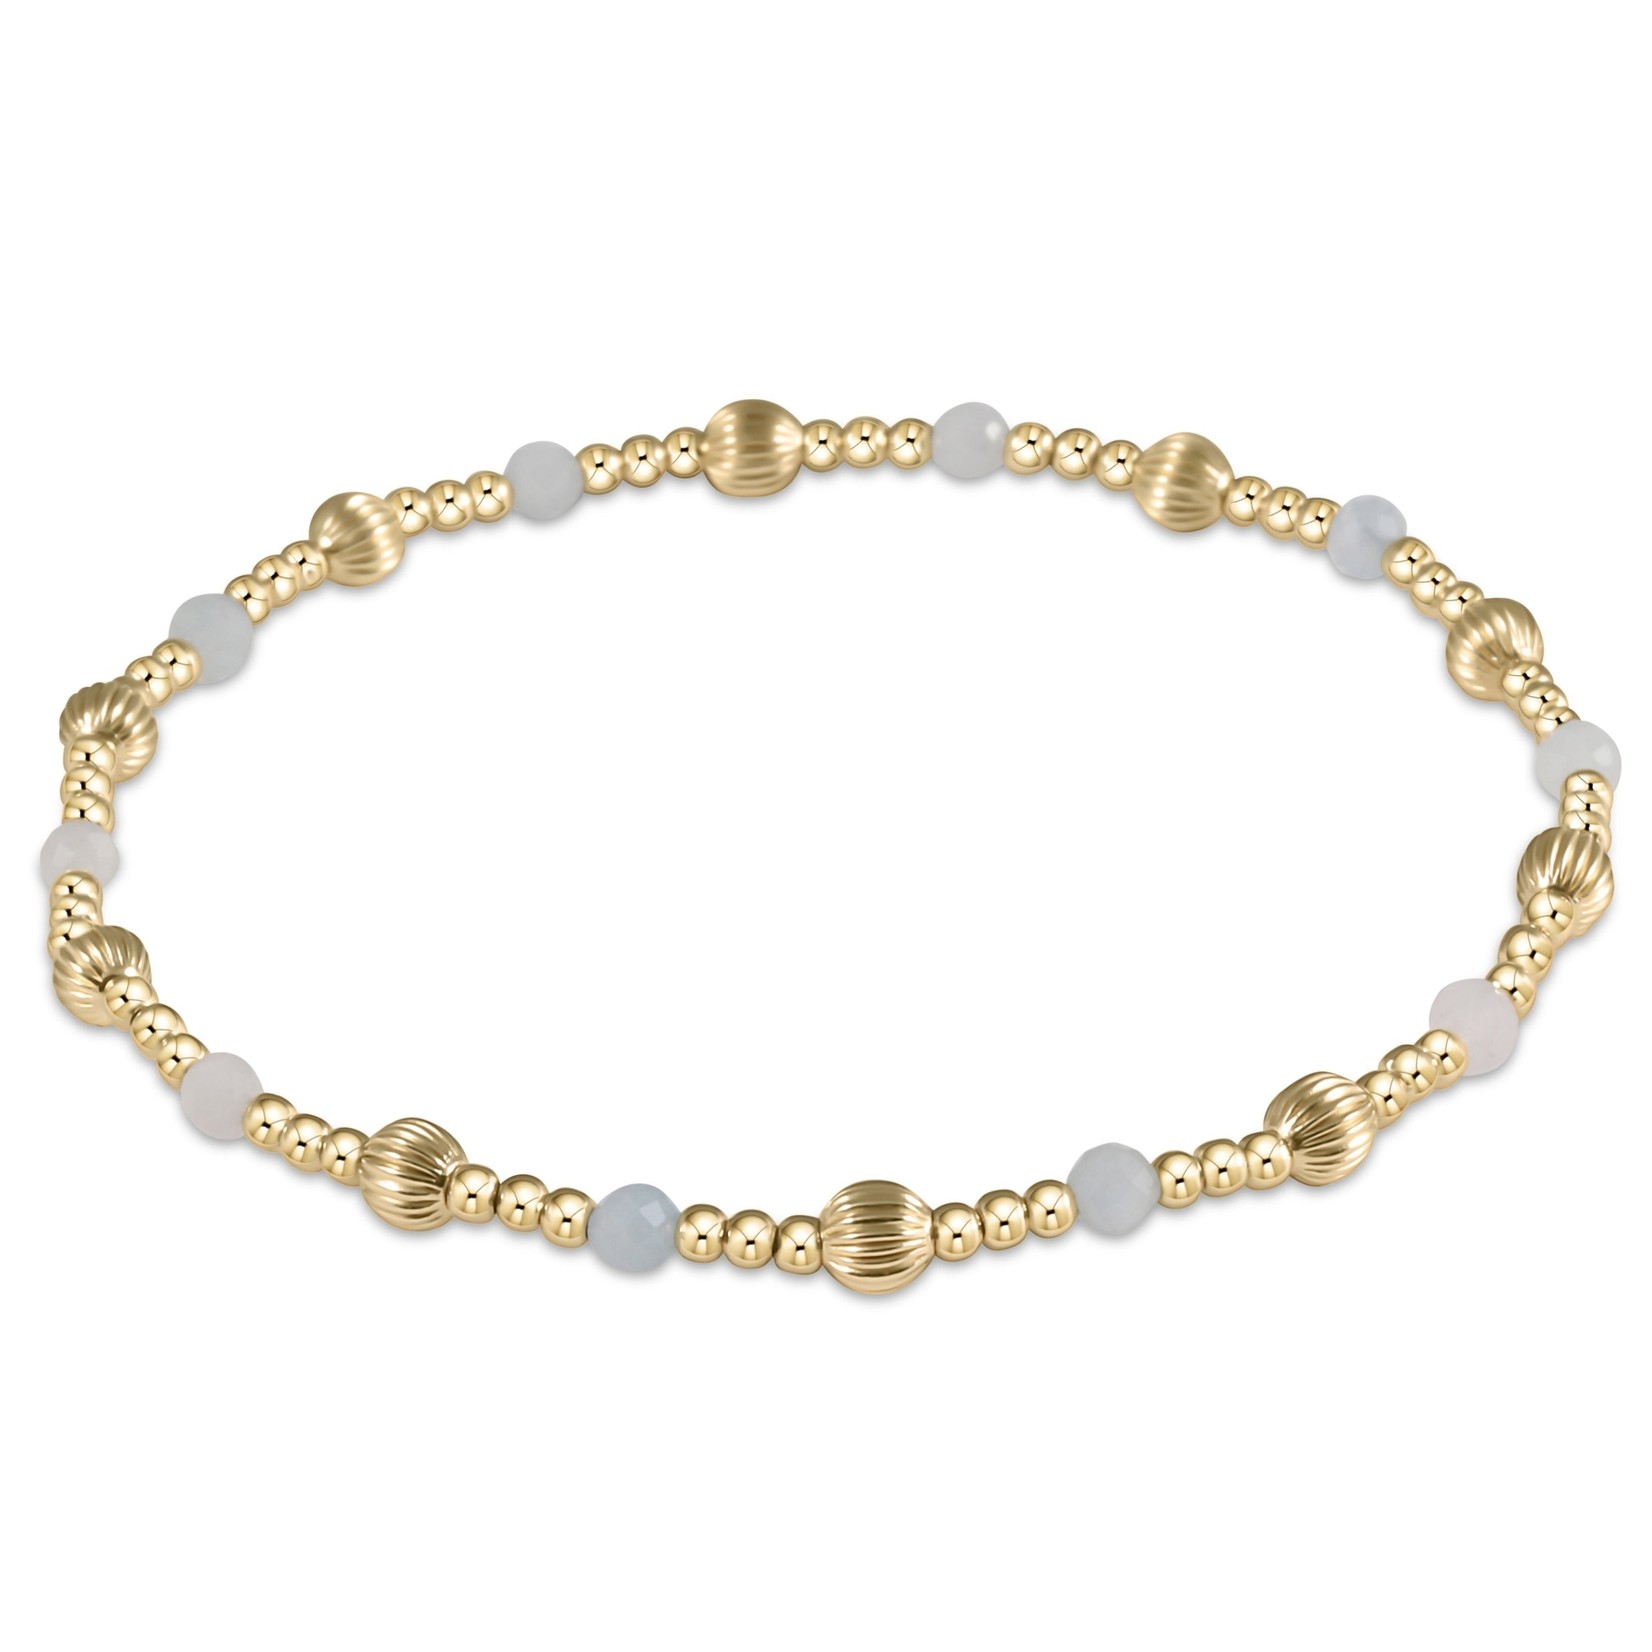 Enewton enewton dignity sincerity pattern 4mm bead bracelet - pearl